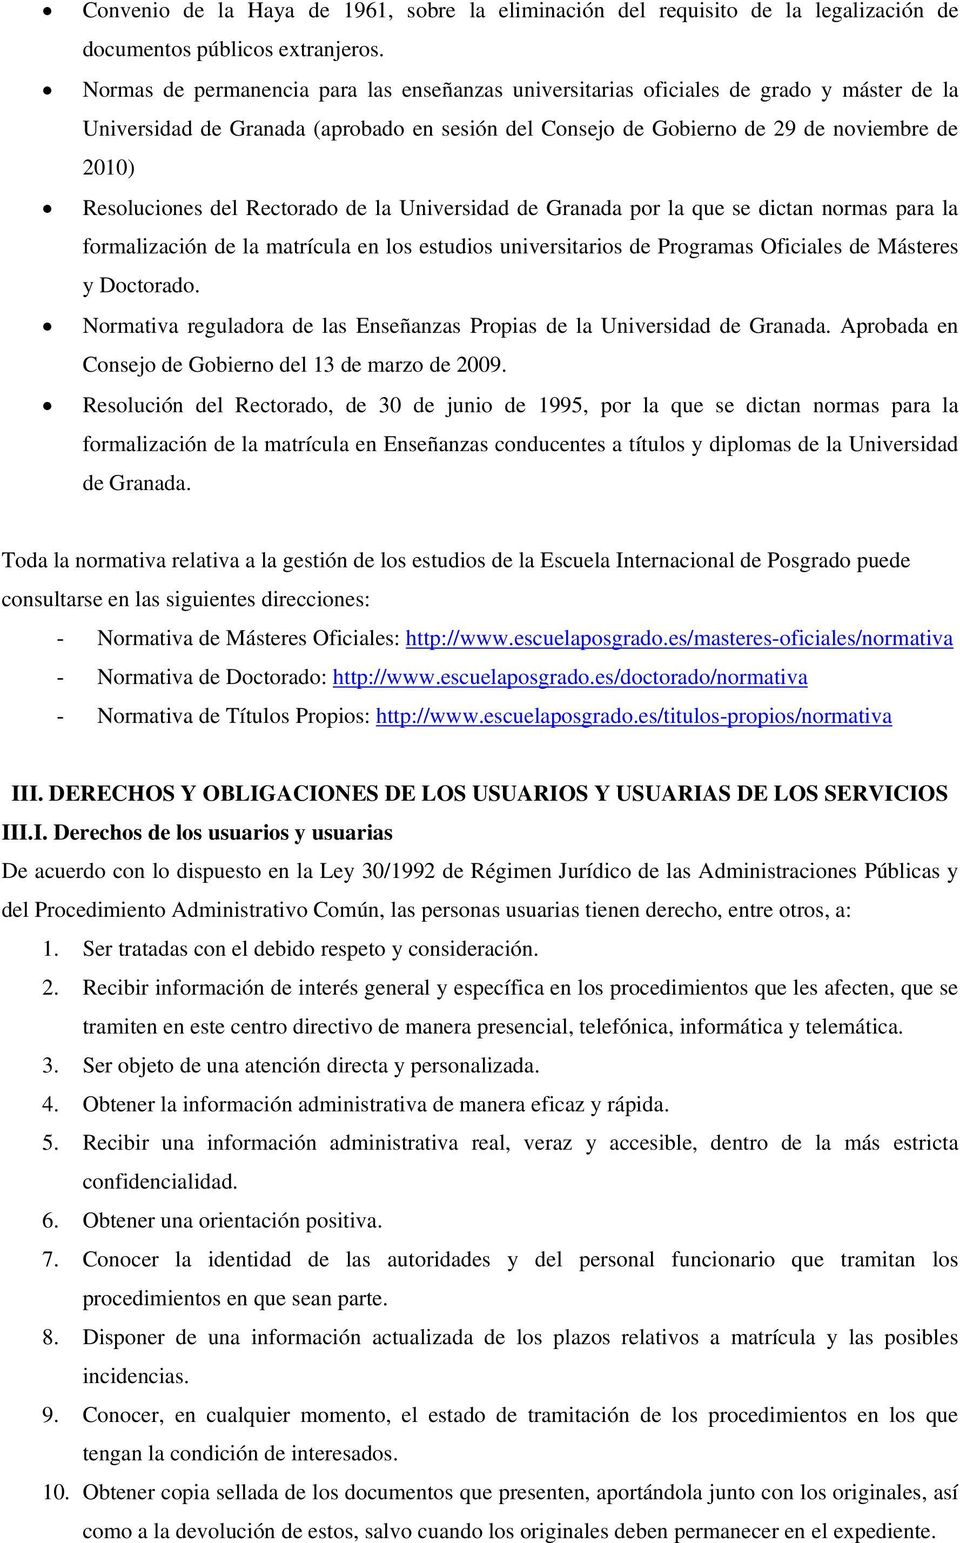 del Rectorado de la Universidad de Granada por la que se dictan normas para la formalización de la matrícula en los estudios universitarios de Programas Oficiales de Másteres y Doctorado.